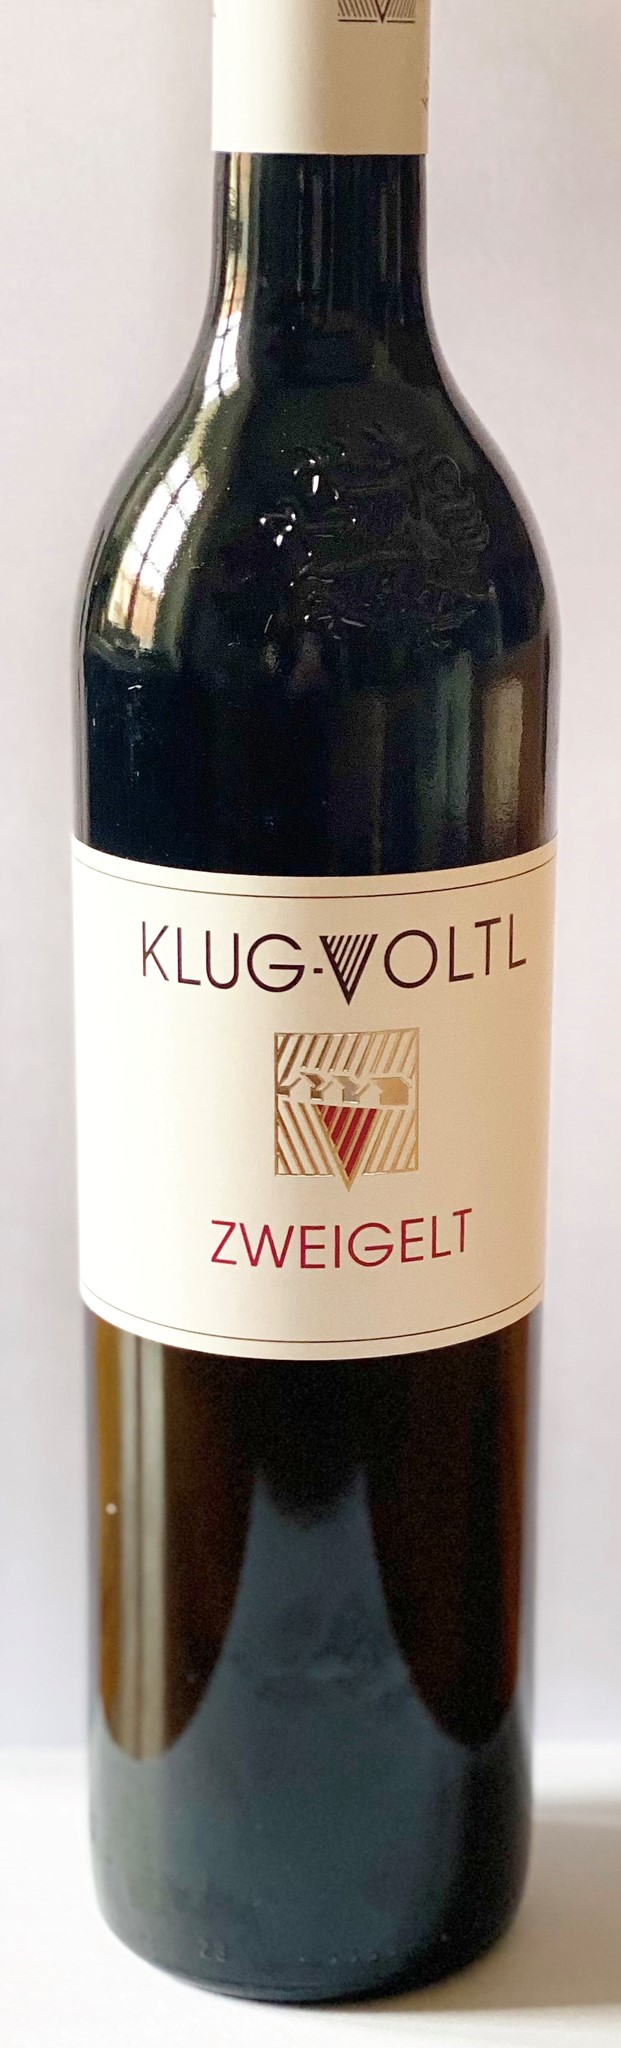 Bild für Kategorie Rotwein aus der Steiermark